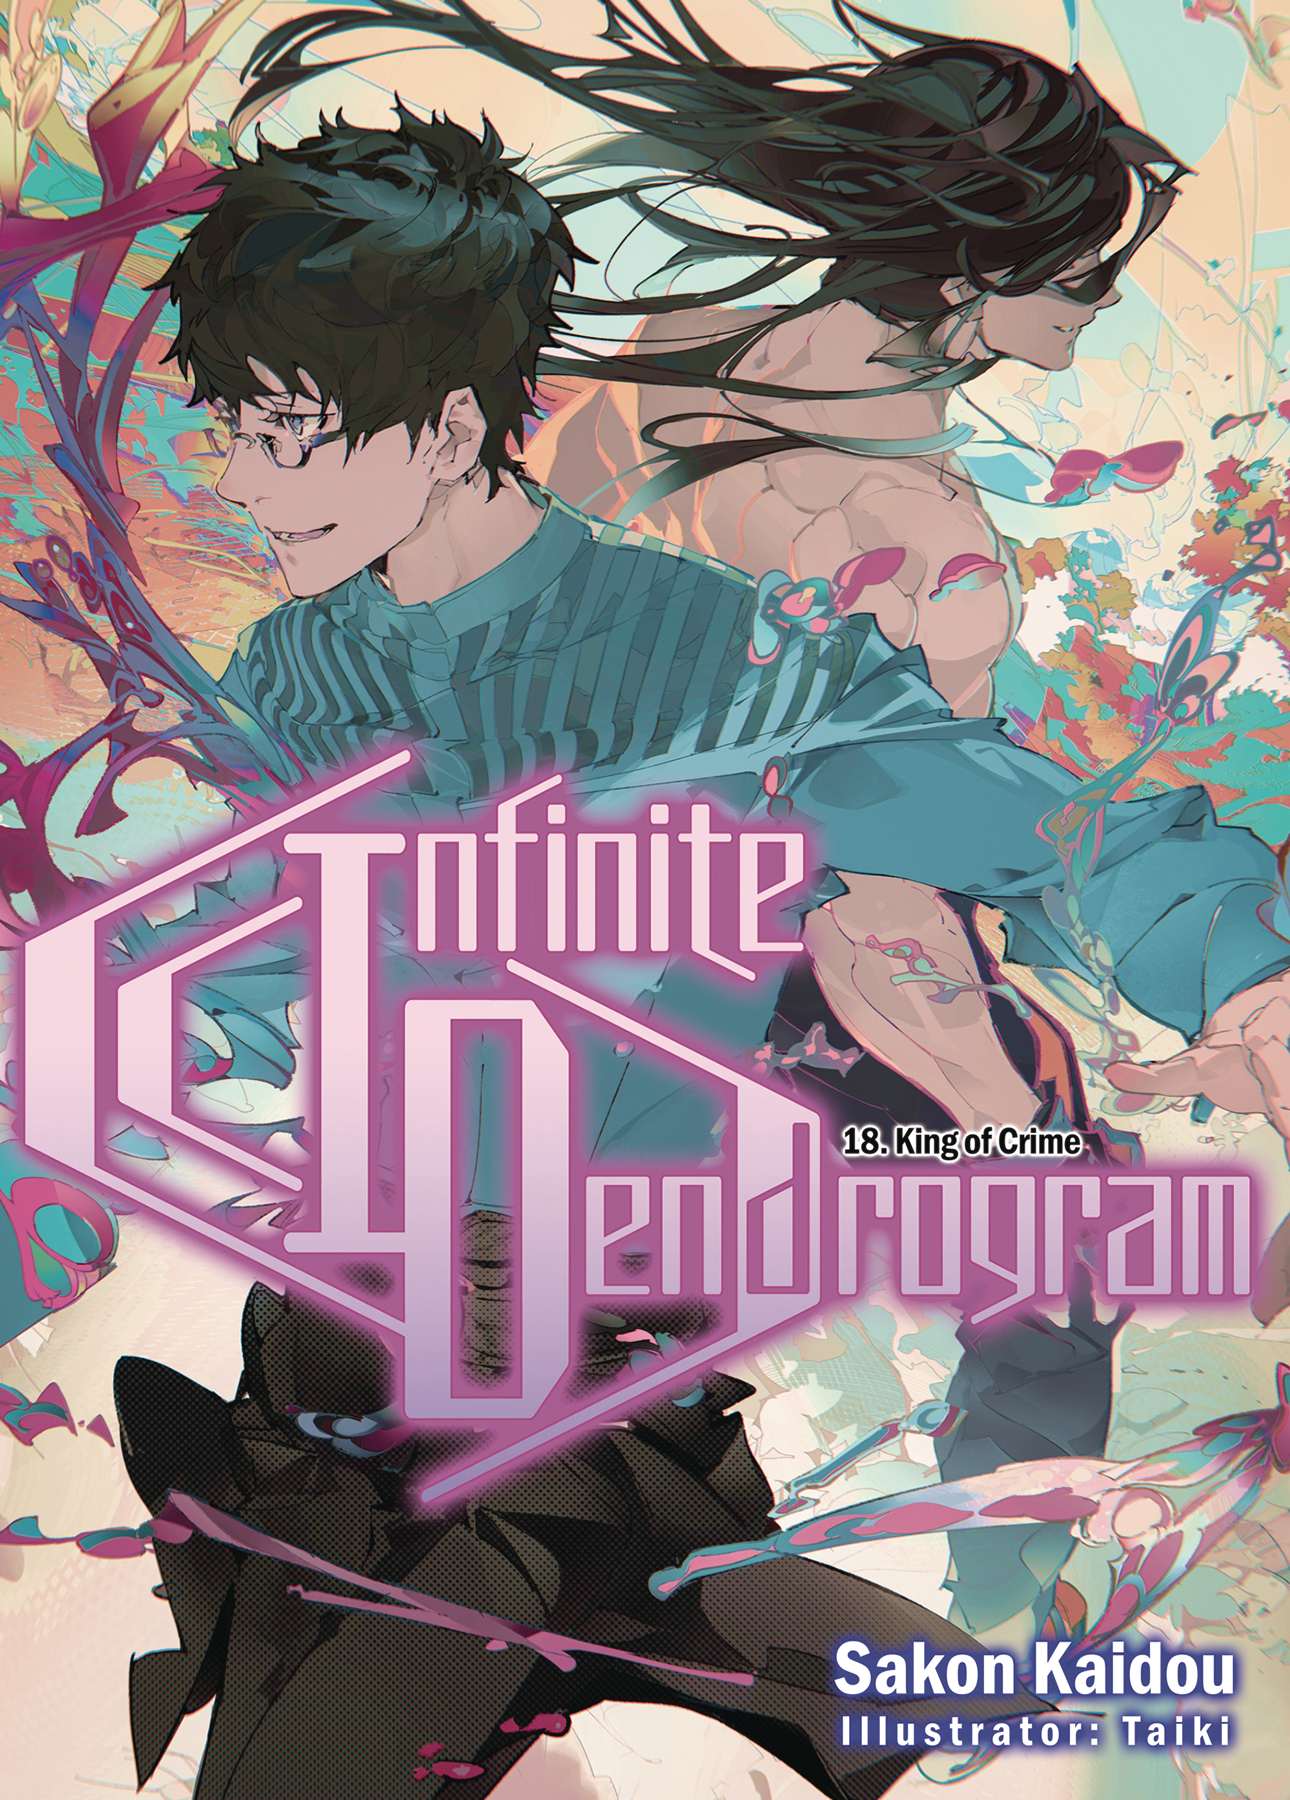 Manga Like Infinite Dendrogram